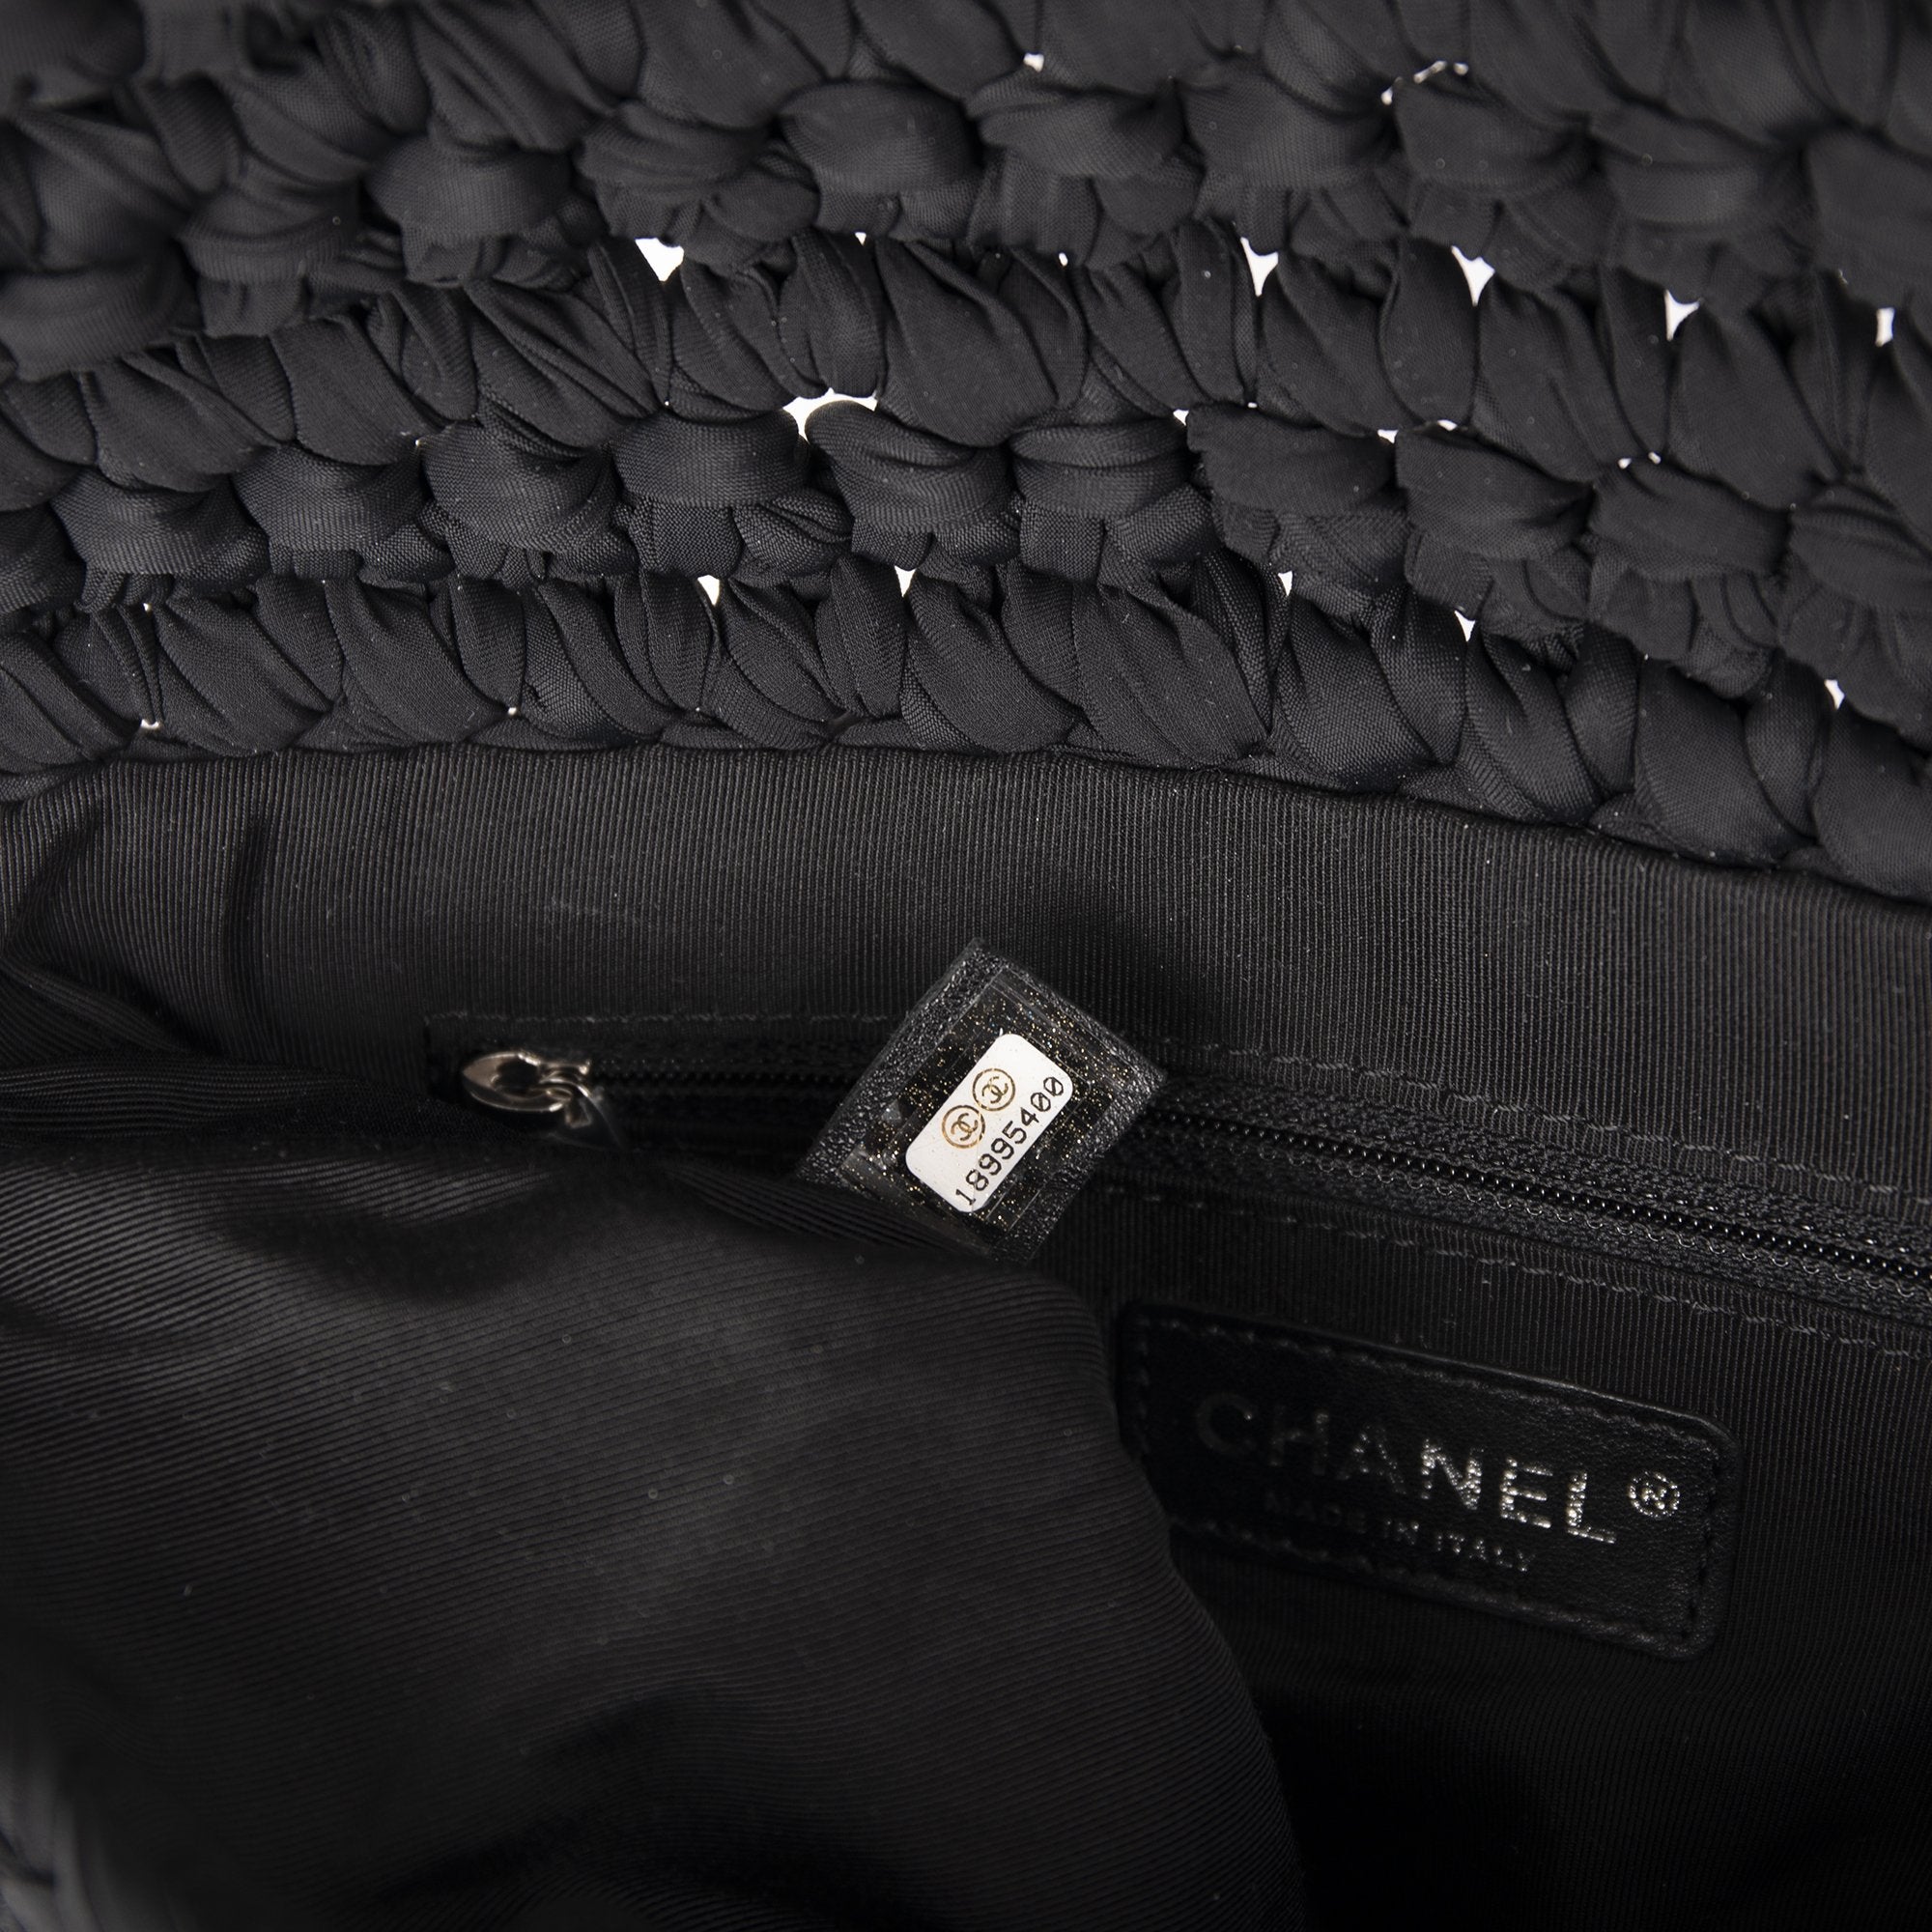 Chanel Black Fancy Crochet Black Flap Bag Chanel